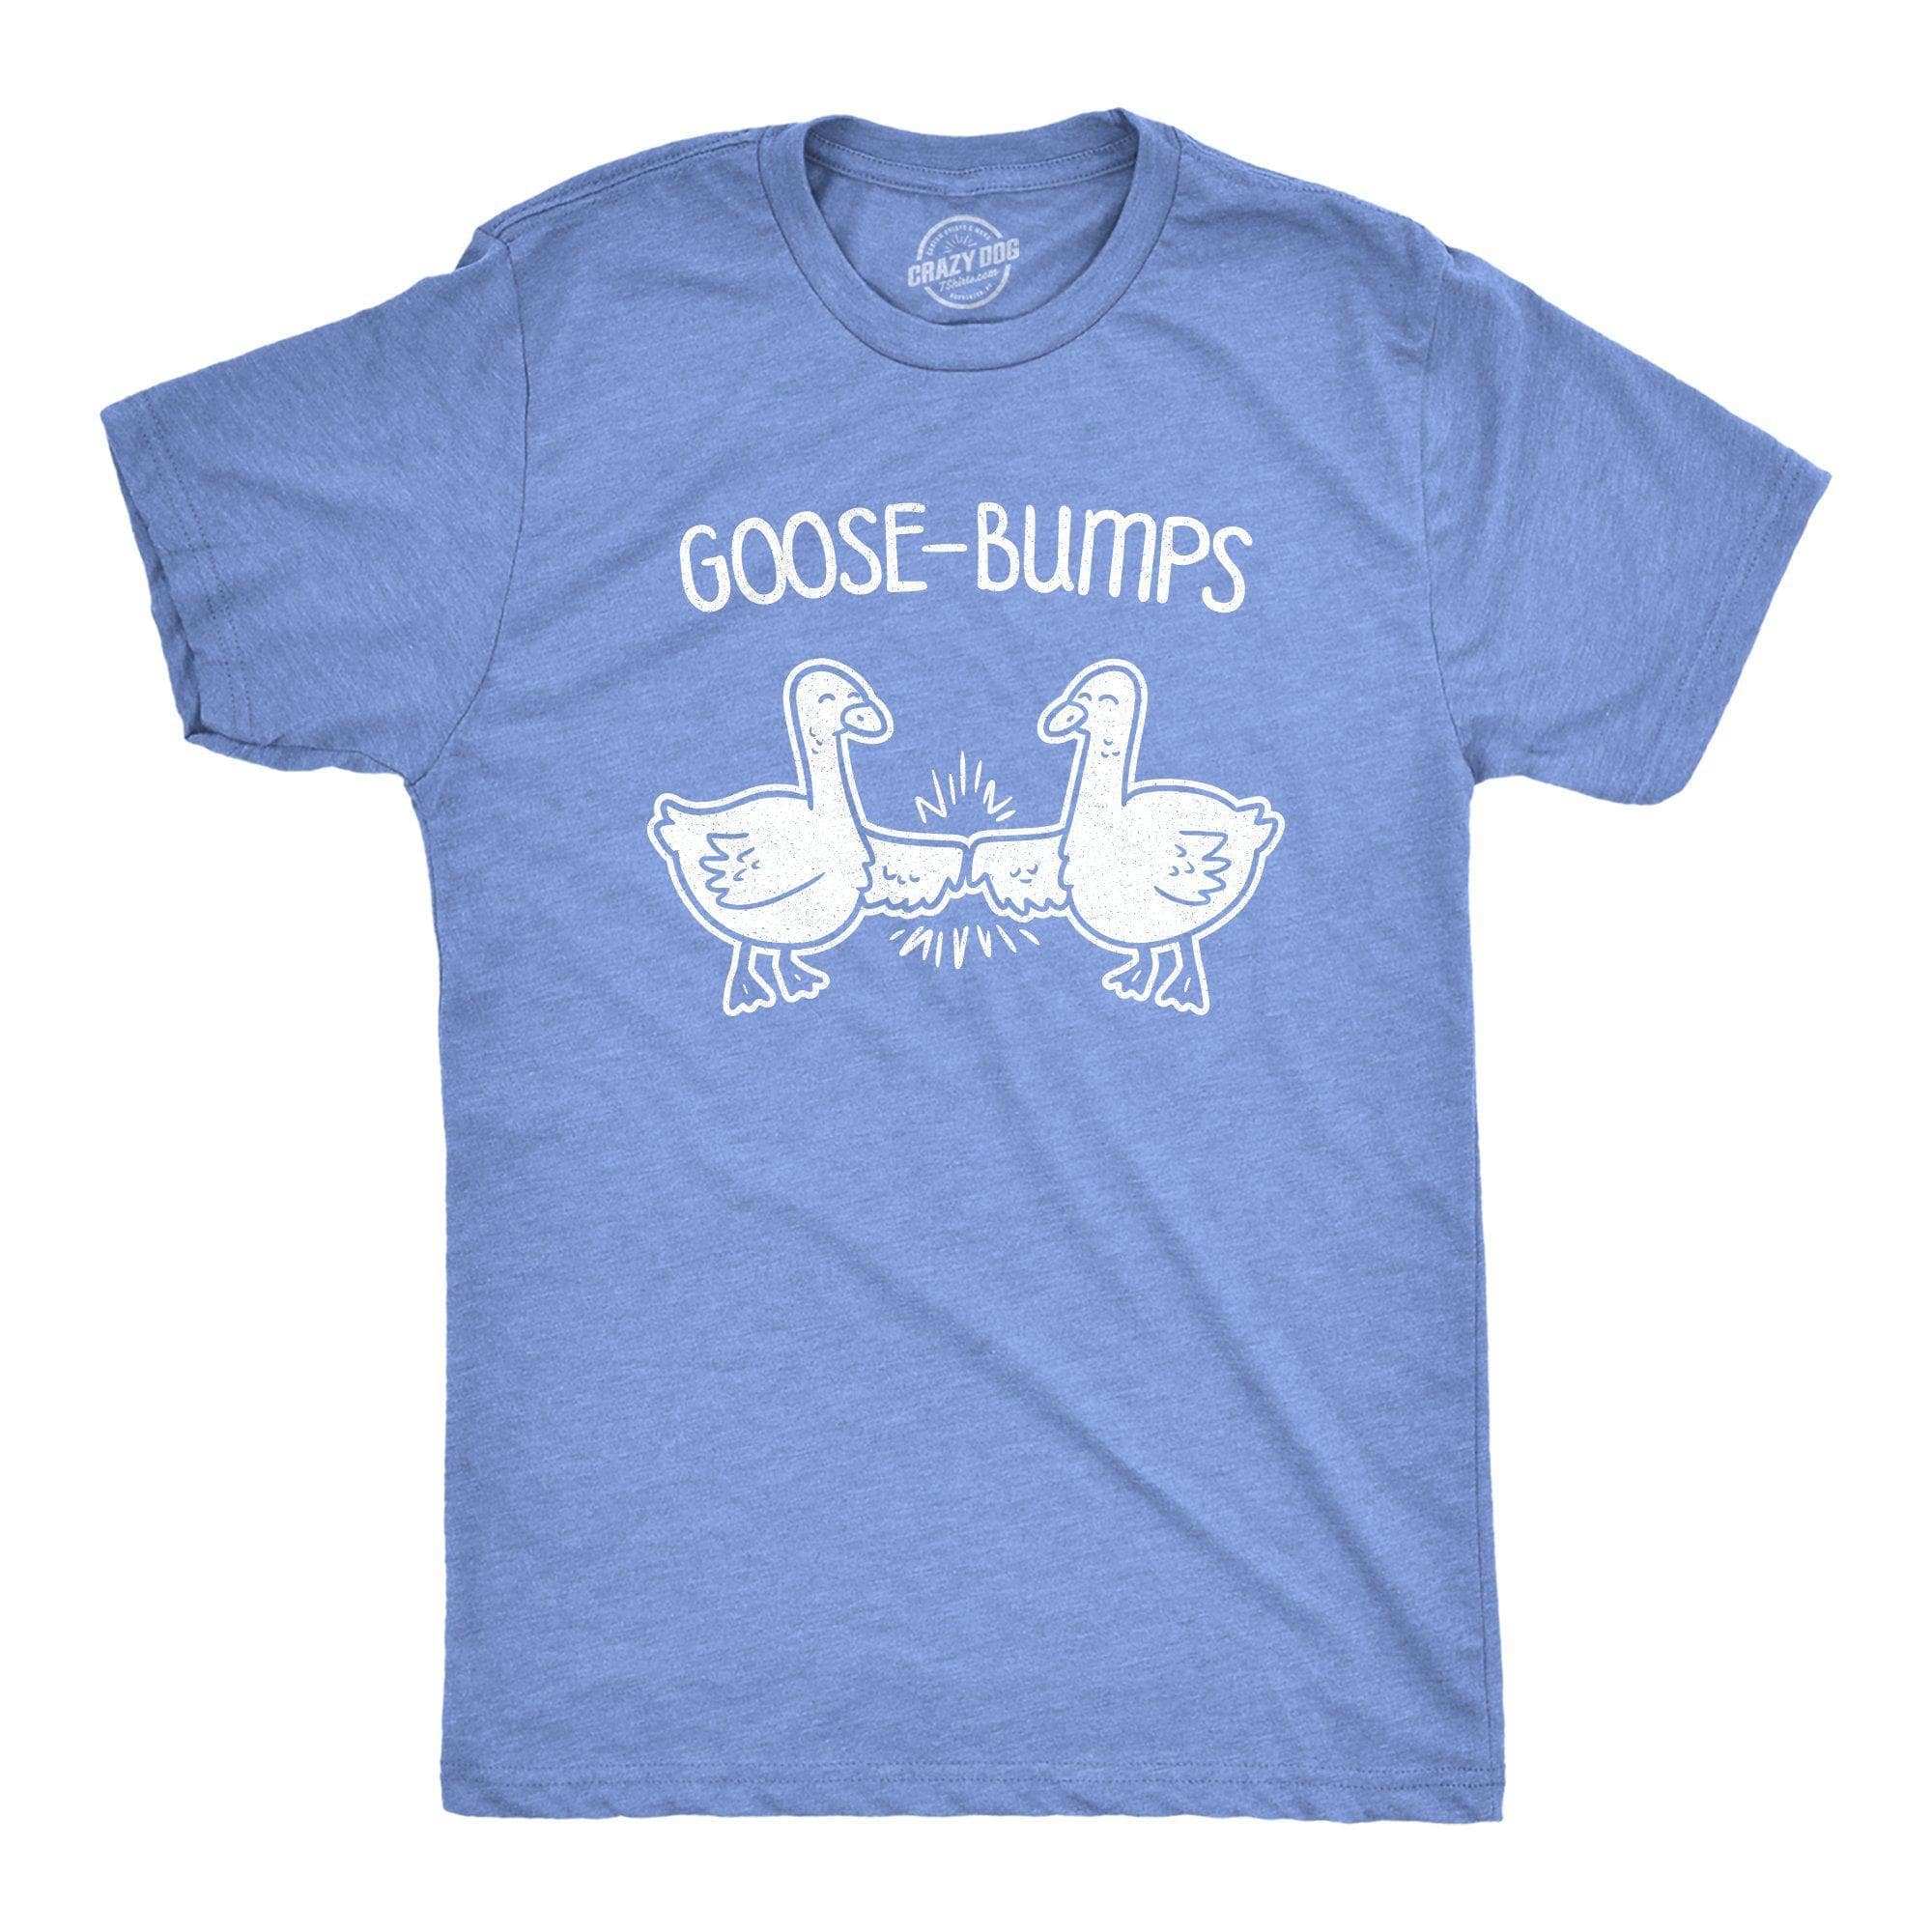 Goose-Bumps Men's Tshirt - Crazy Dog T-Shirts